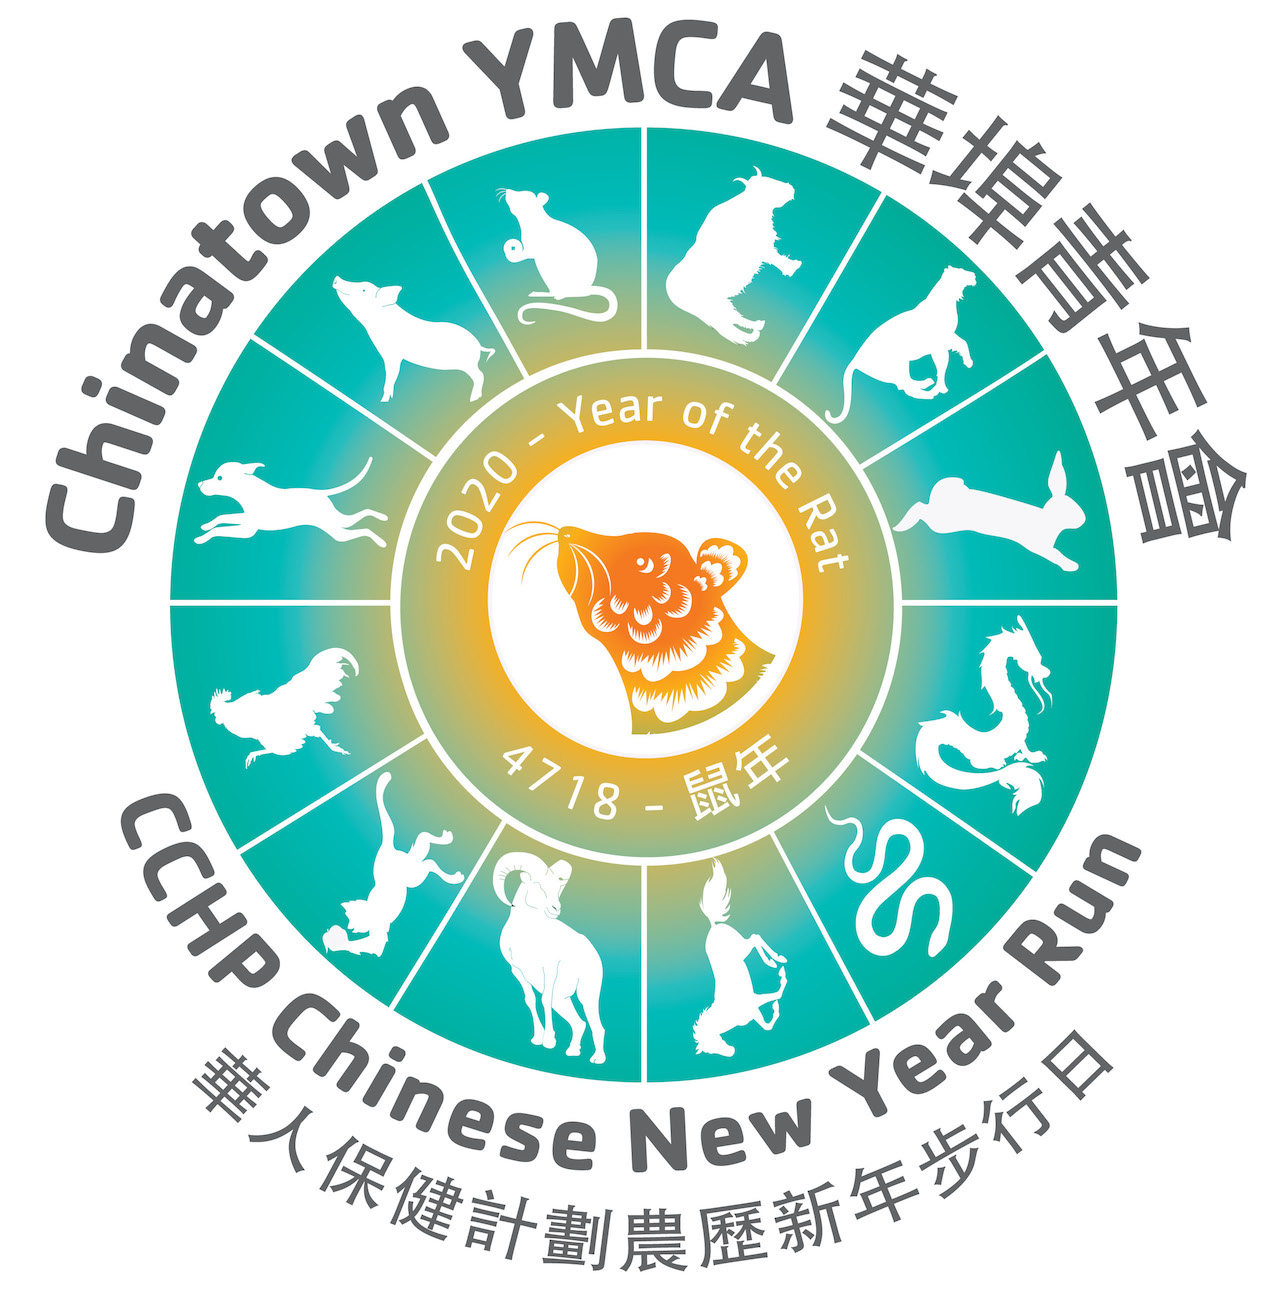 CCHP Chinatown YMCA Chinese New Year Run